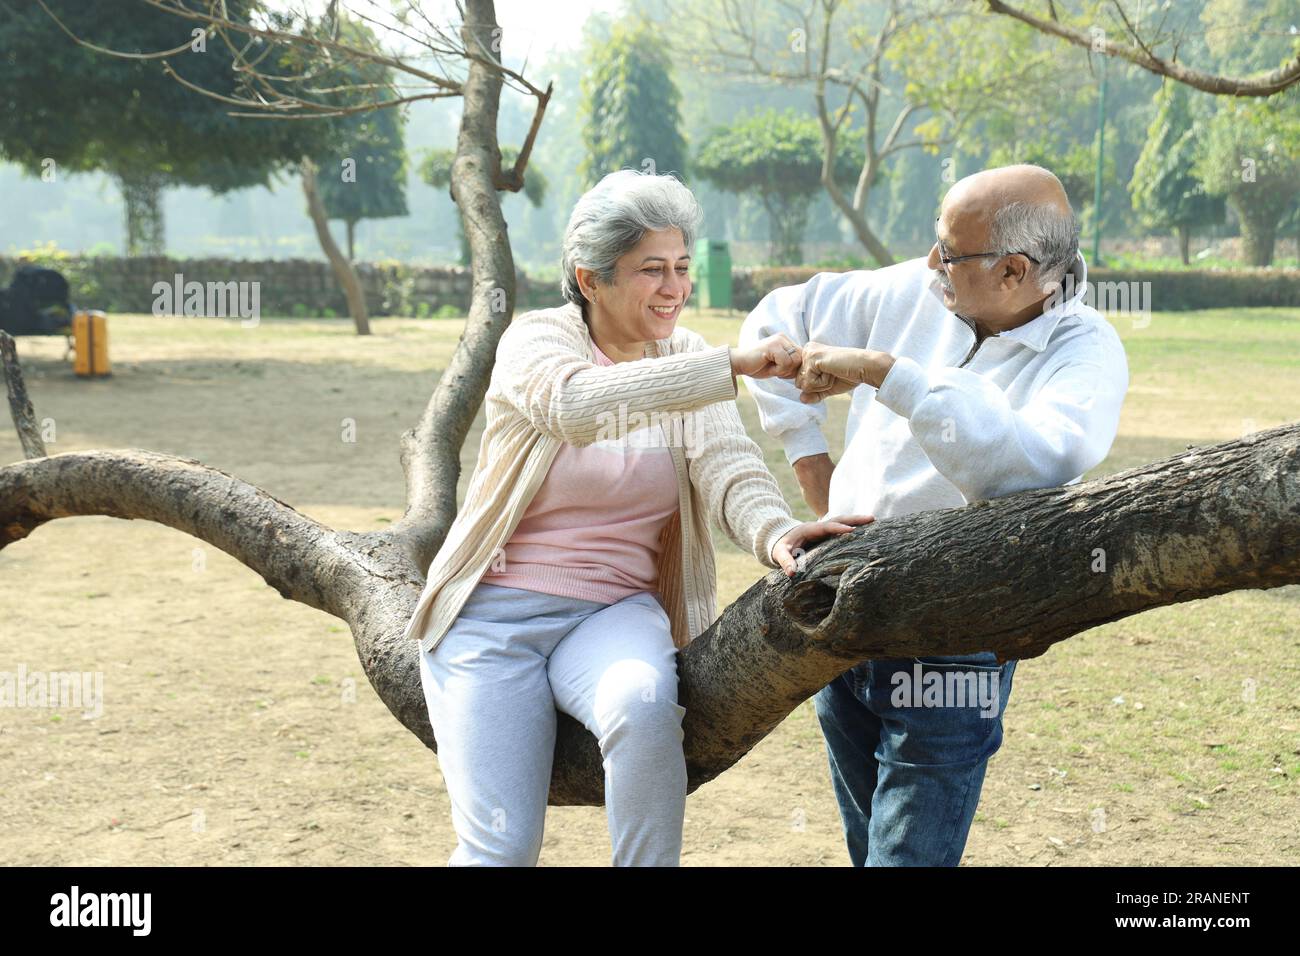 Ein altes indisches Paar, das eine gute romantische Zeit im grünen Park hat, umgeben von einer ruhigen Atmosphäre und einer frischen Luft Umgebung am Tag. Stockfoto